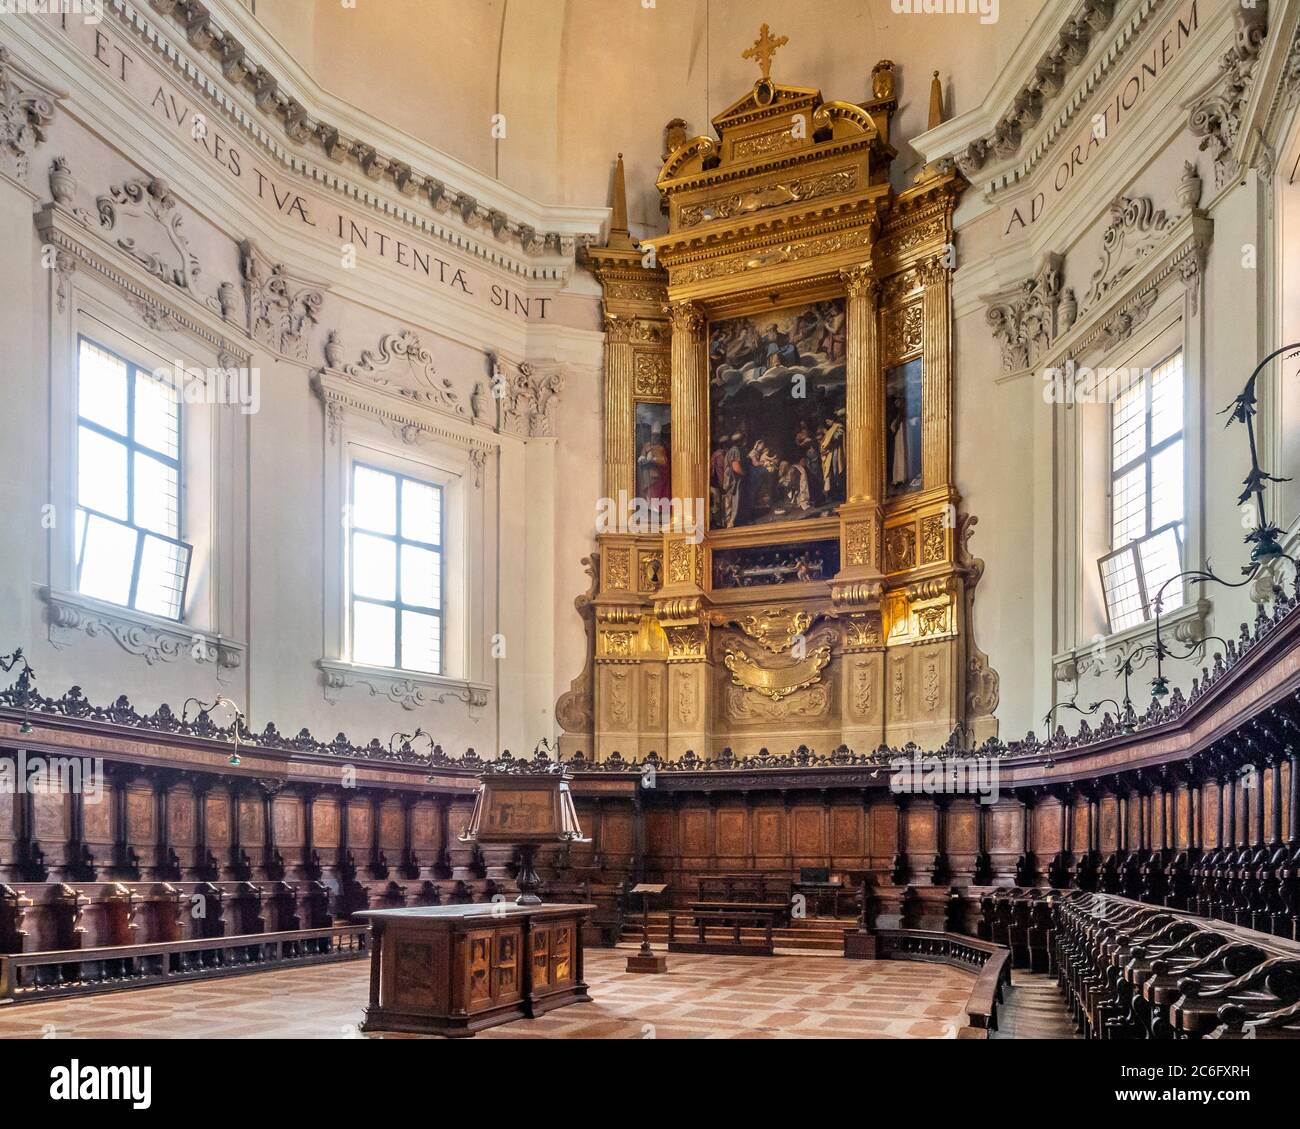 L'abside e il coro ligneo della Basilica di San Domenico, Bologna. Italia. Foto Stock